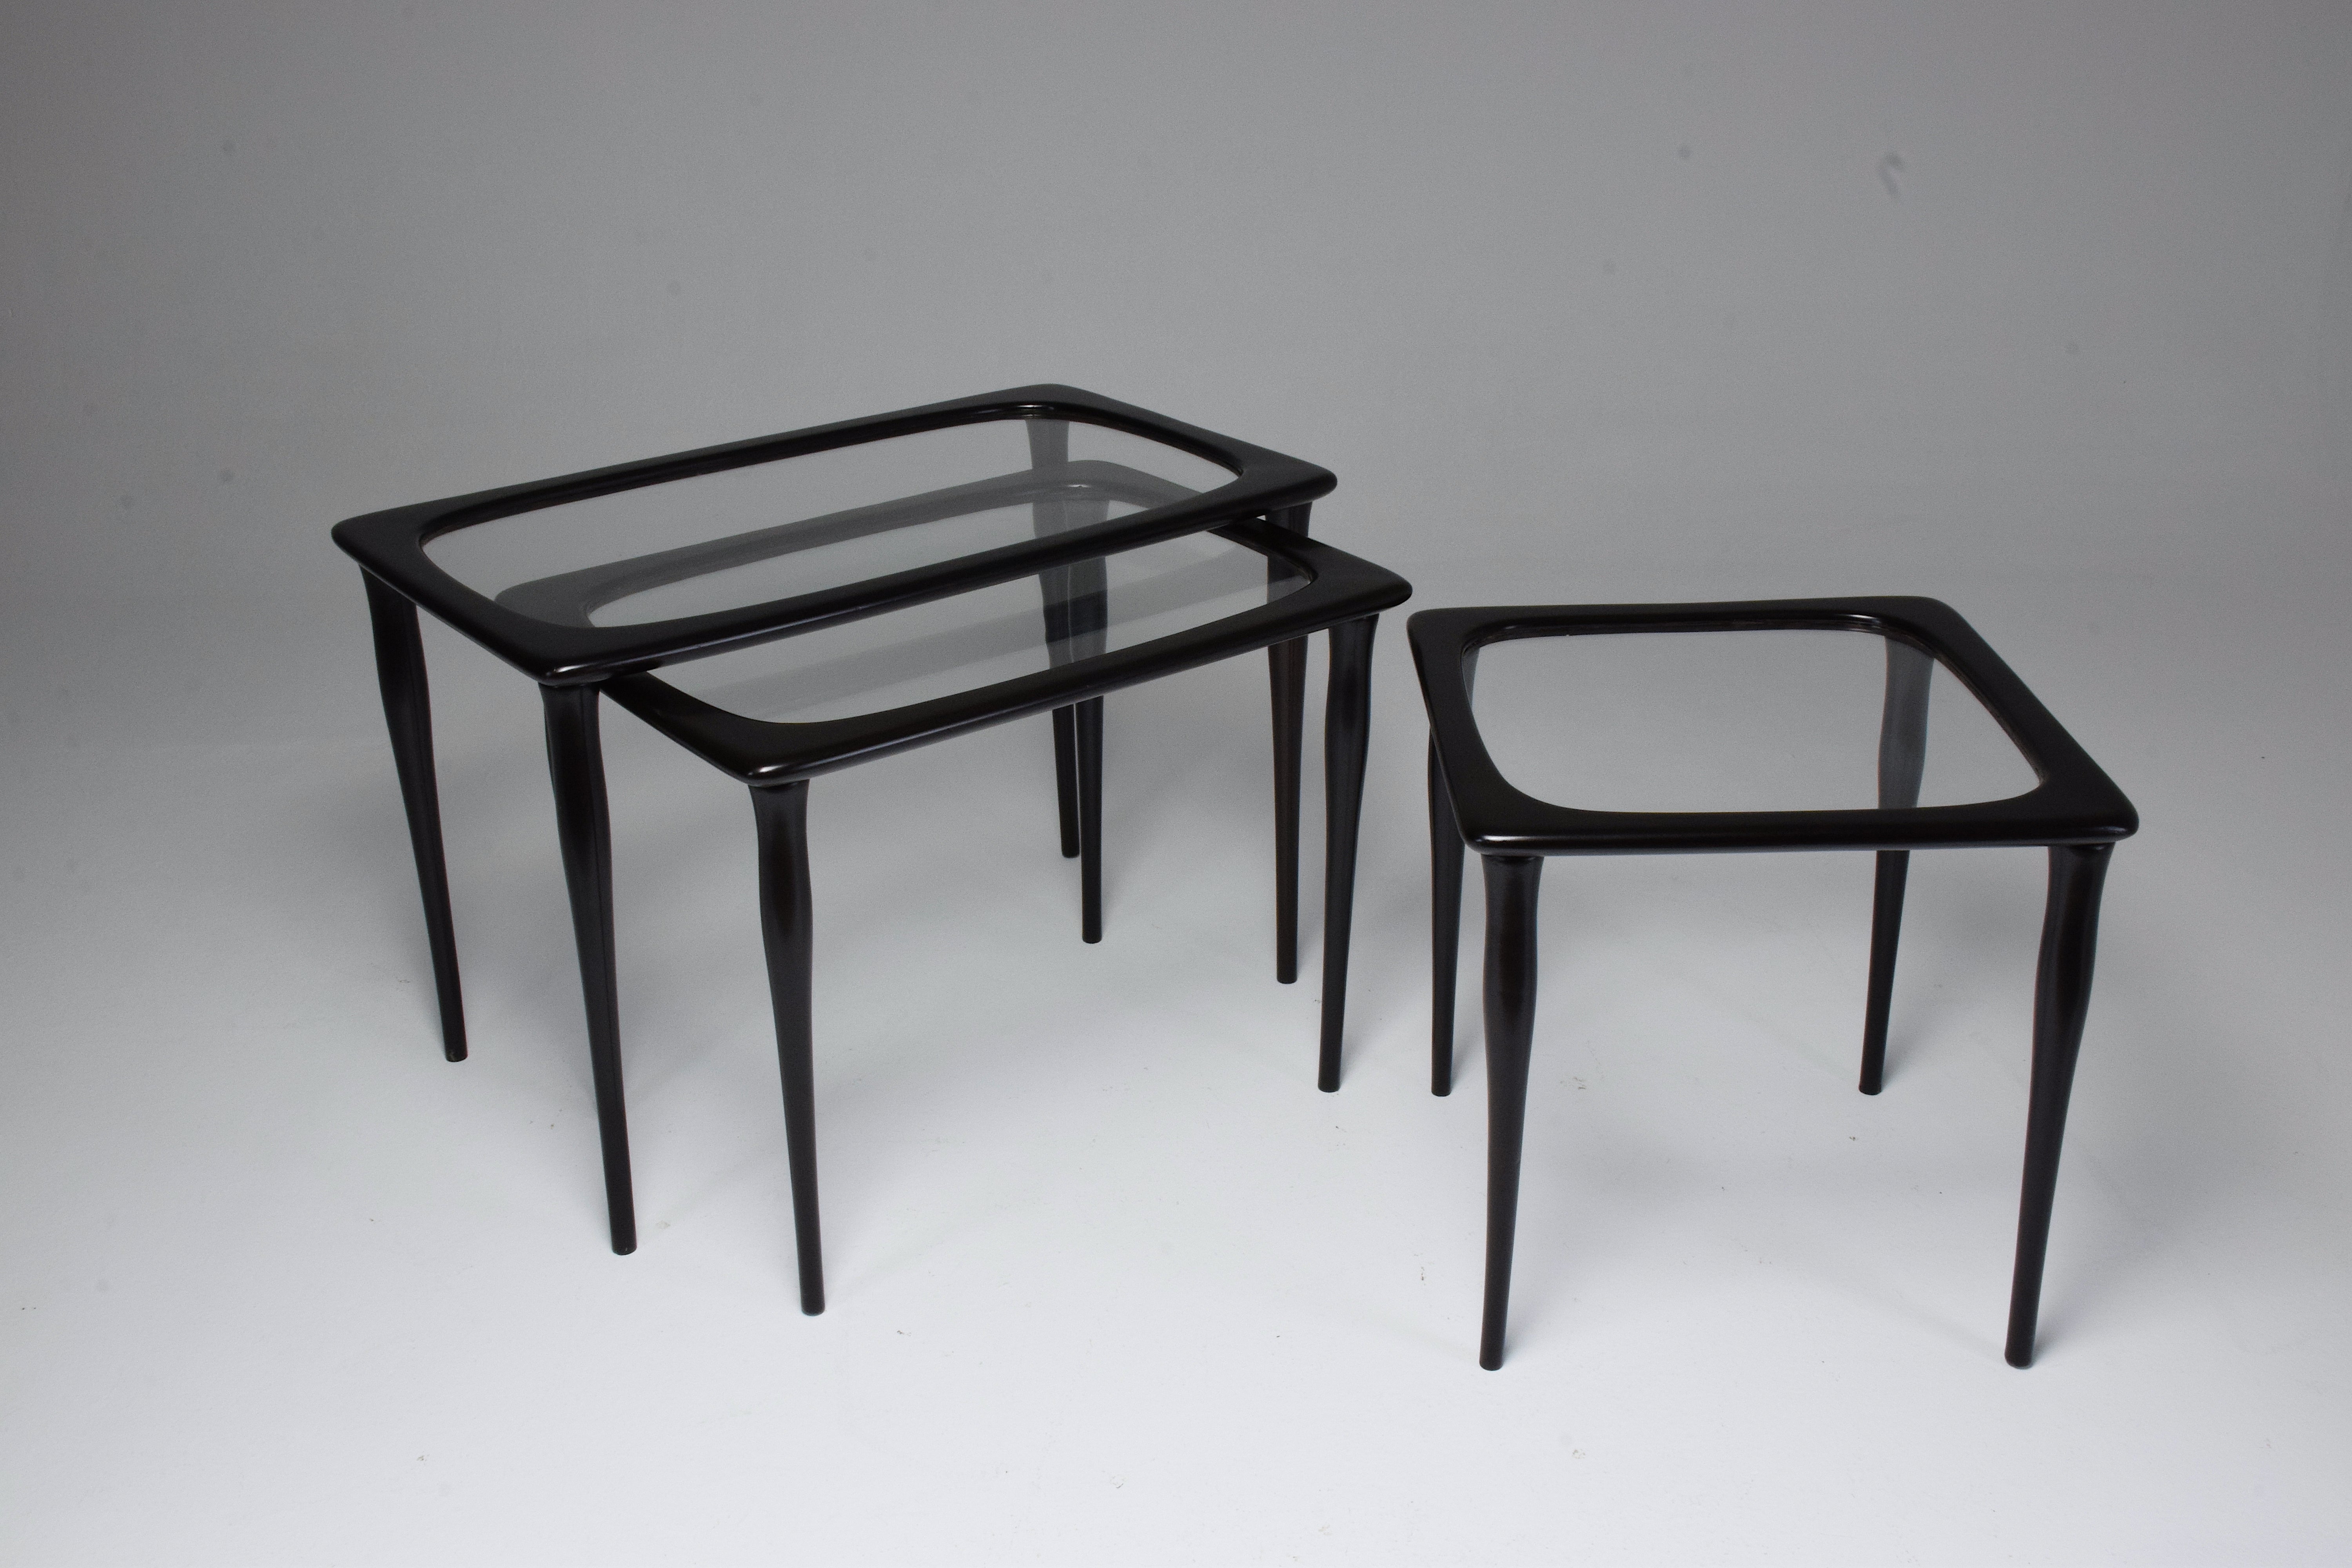 Ein exquisites Set aus drei Beistell- oder Couchtischen im Vintage-Stil, das der bekannte italienische Möbeldesigner Ico Parisi in den 1950er Jahren entworfen hat. Sie zeugen von Parisis visionärem Ansatz im Möbeldesign, der sich durch klare Linien